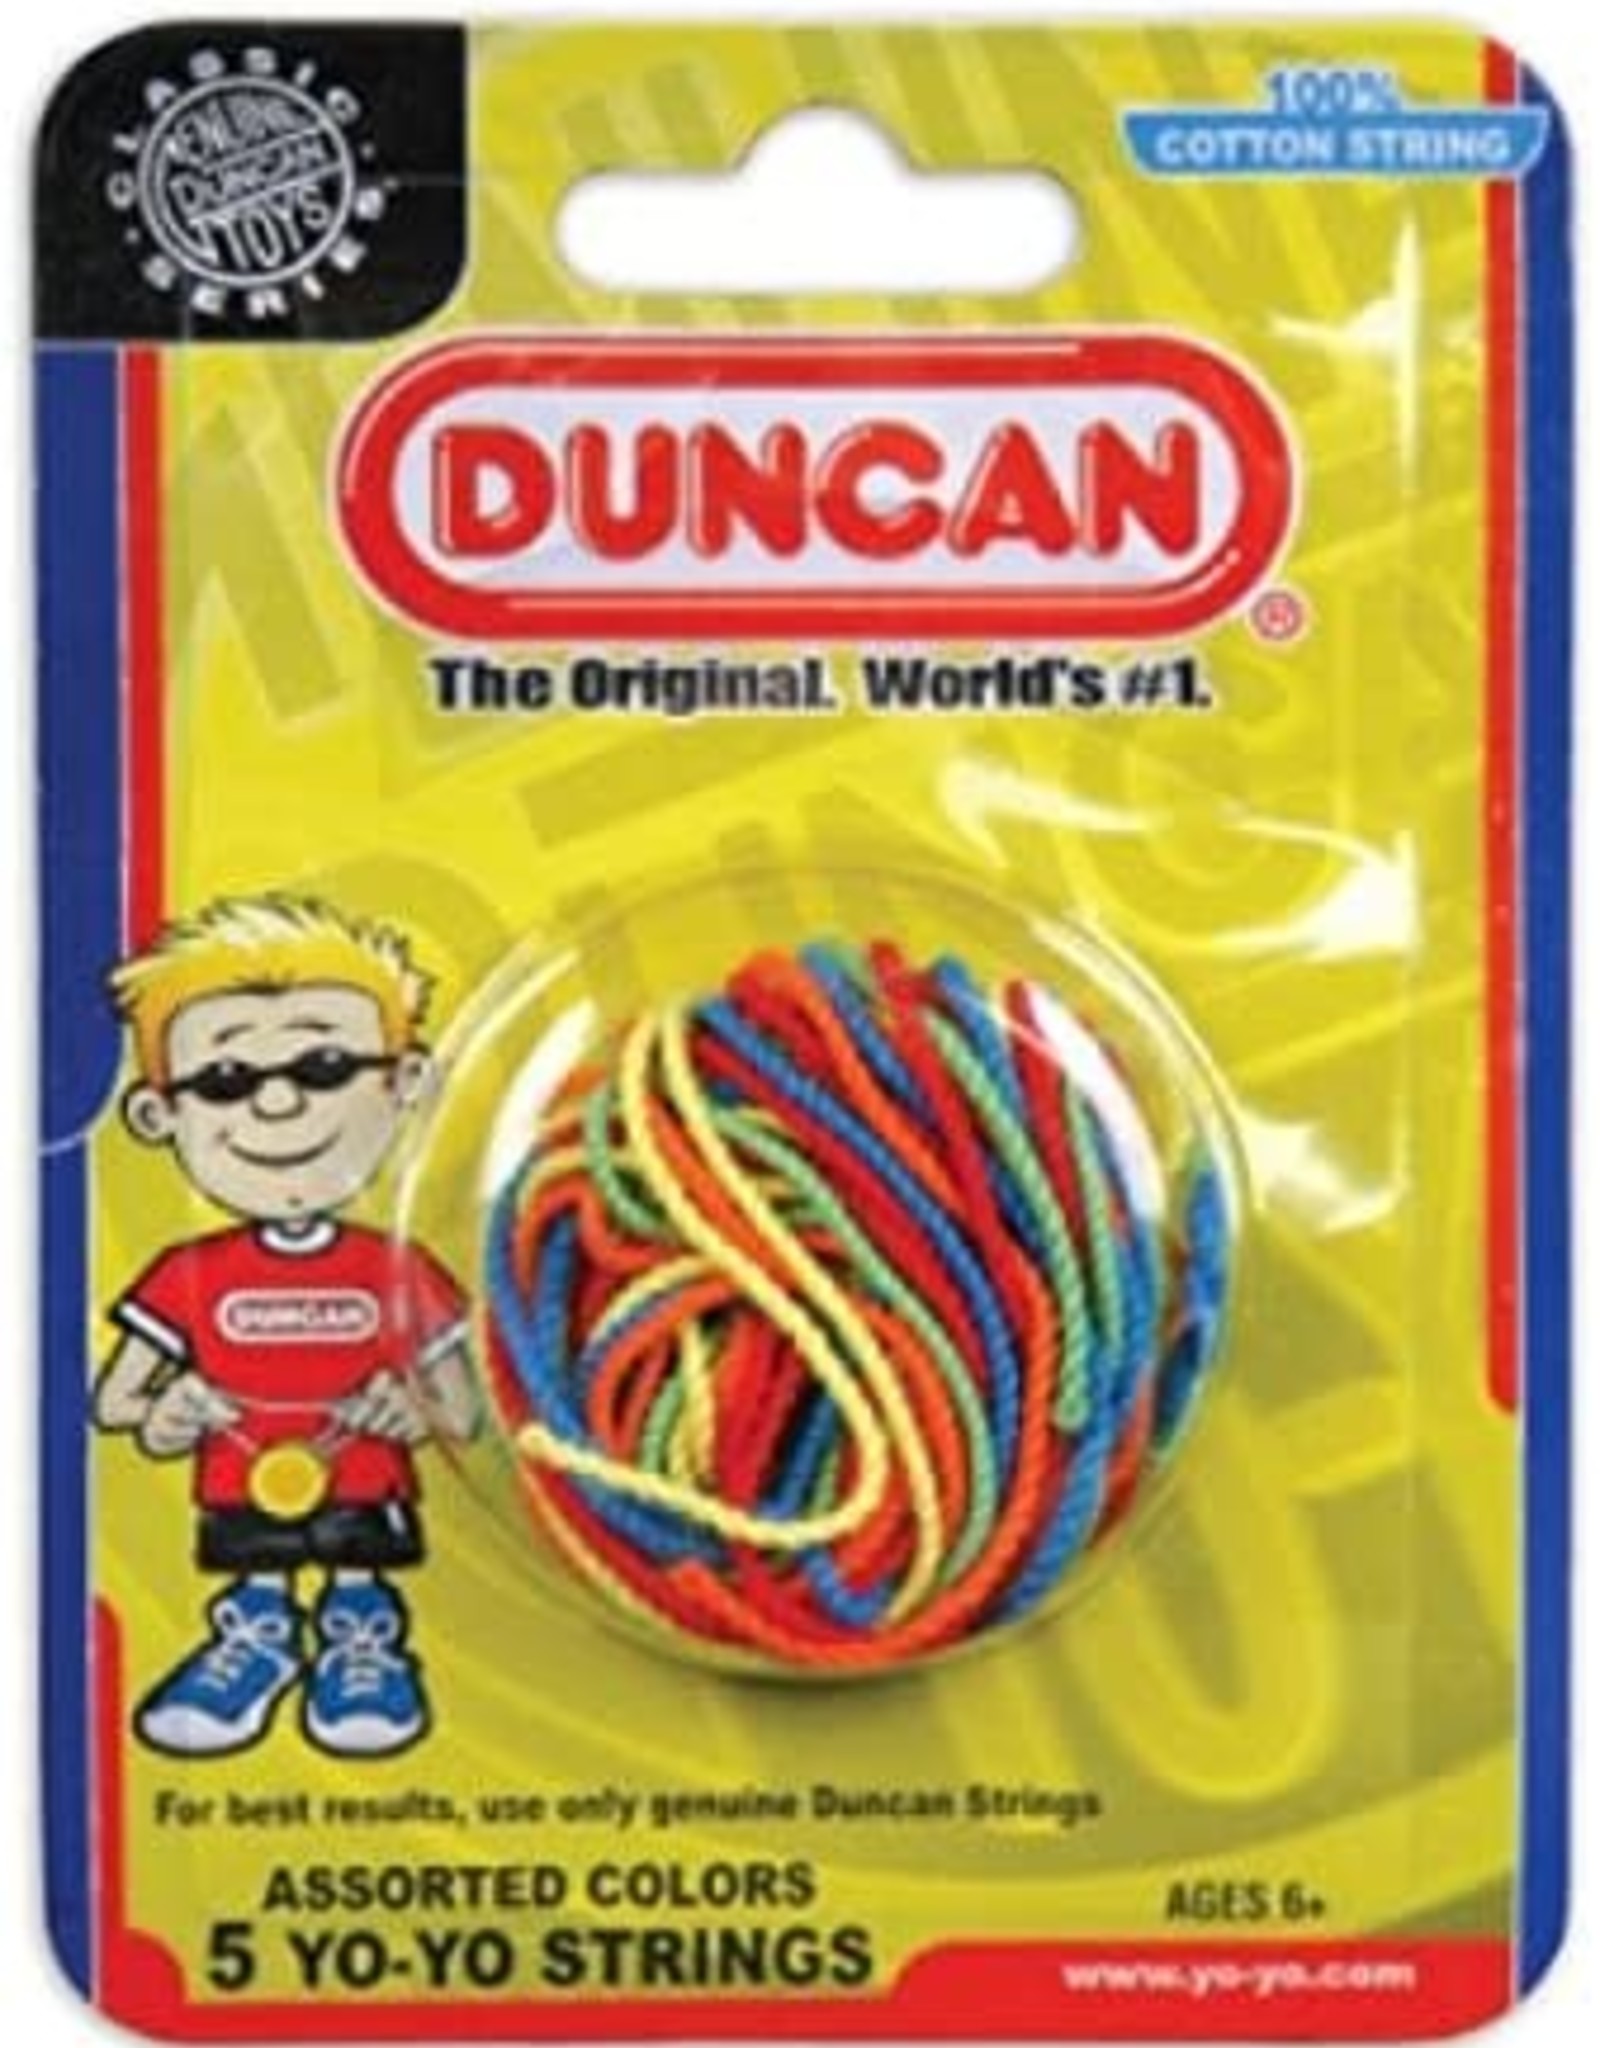 Duncan Yo-Yo String (5 pack)-Multi-color